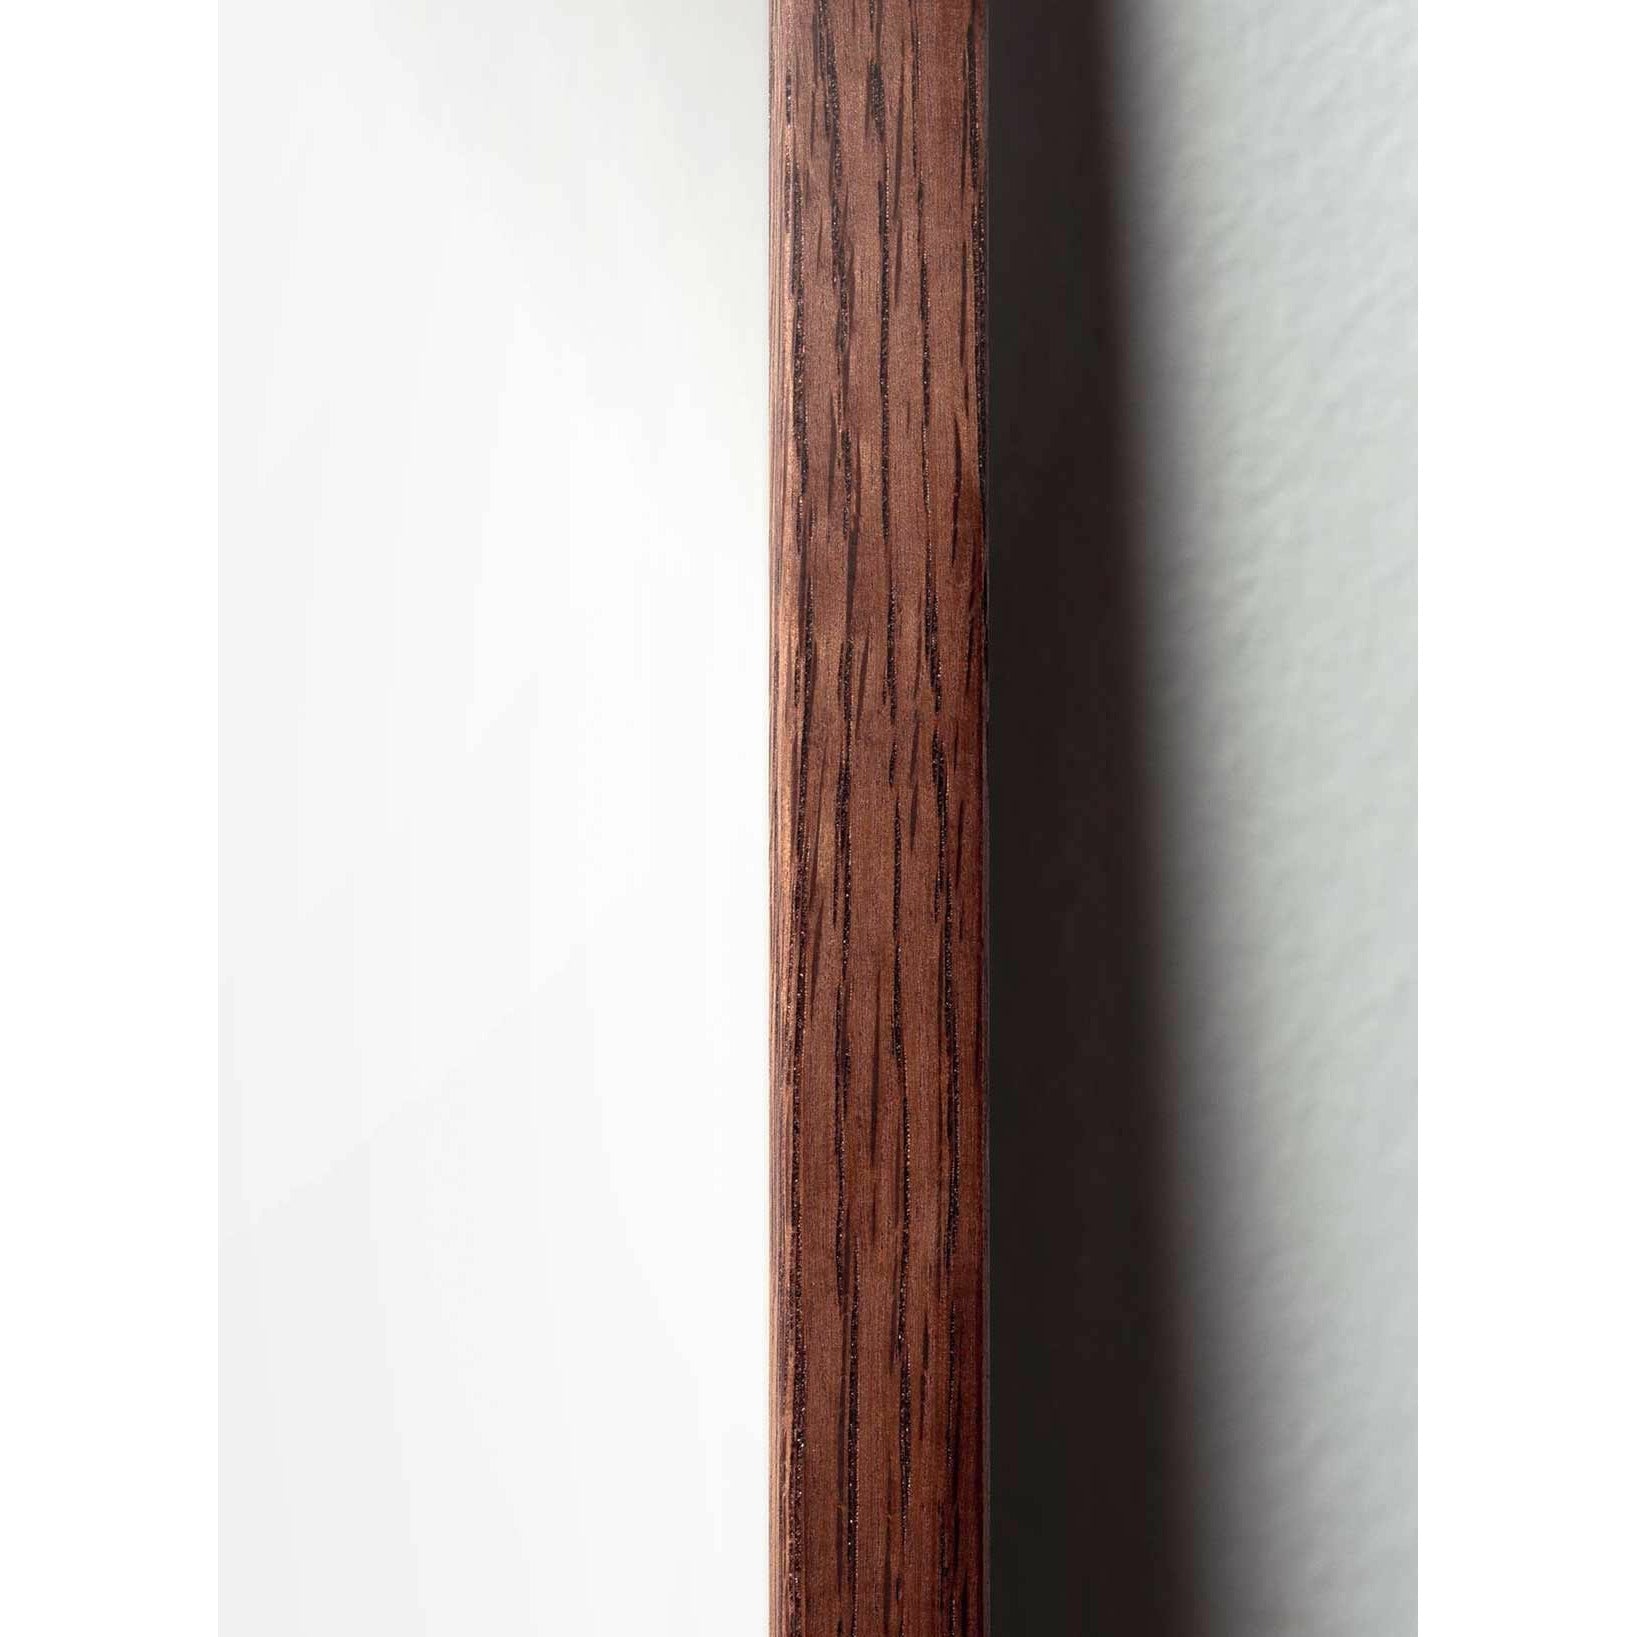 Póster de línea de huevo de precisión, marco de madera oscura 70x100 cm, fondo blanco